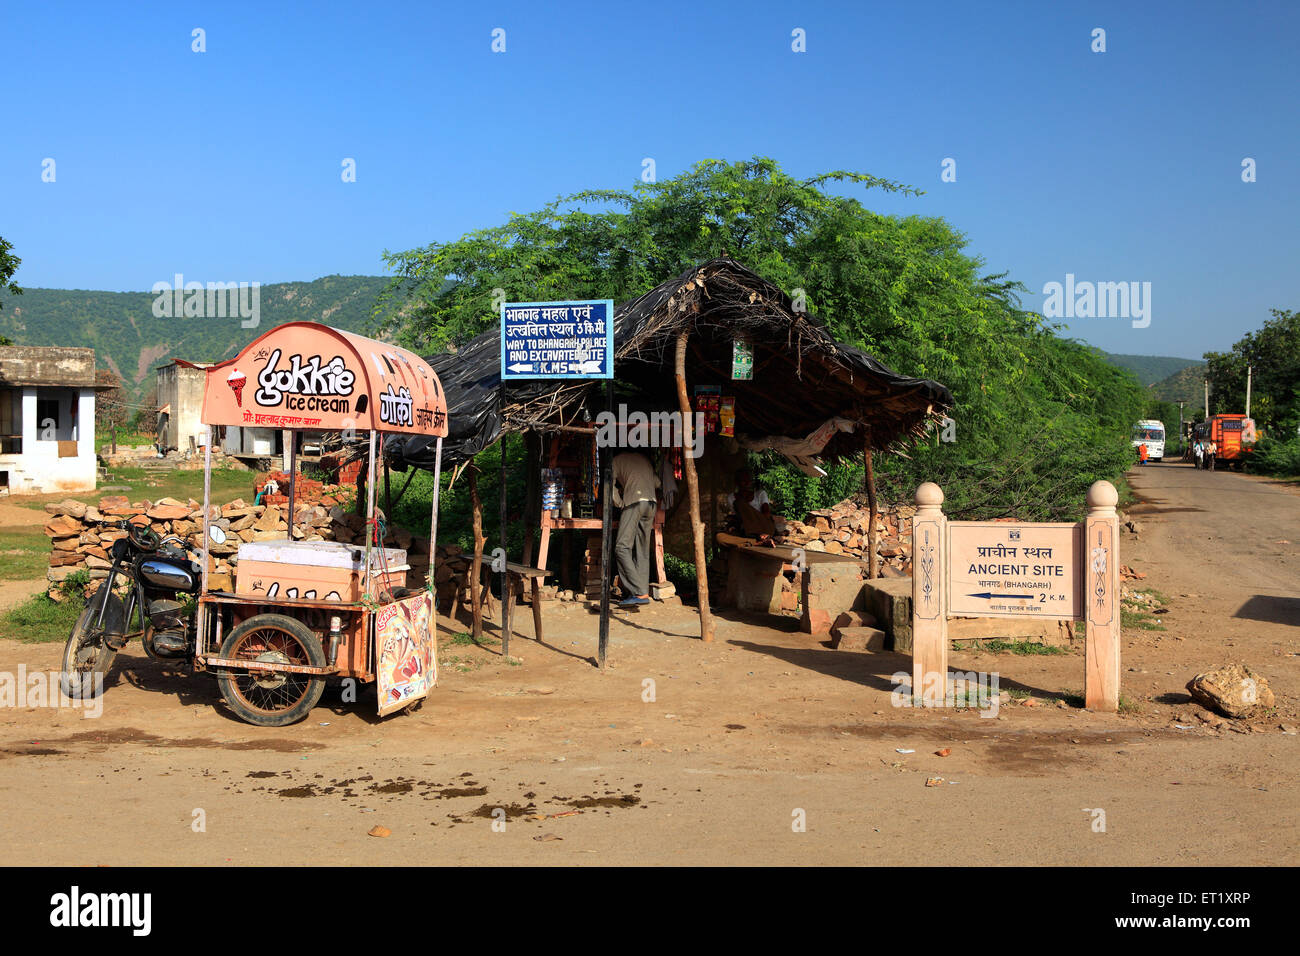 Ancient site signboard ; ice cream vendor bike ; Bhangarh Fort ; Rundh Bhangarh ; Bhangarh ; Rajgarh ; Alwar ; Rajasthan ; India ; Asia Stock Photo